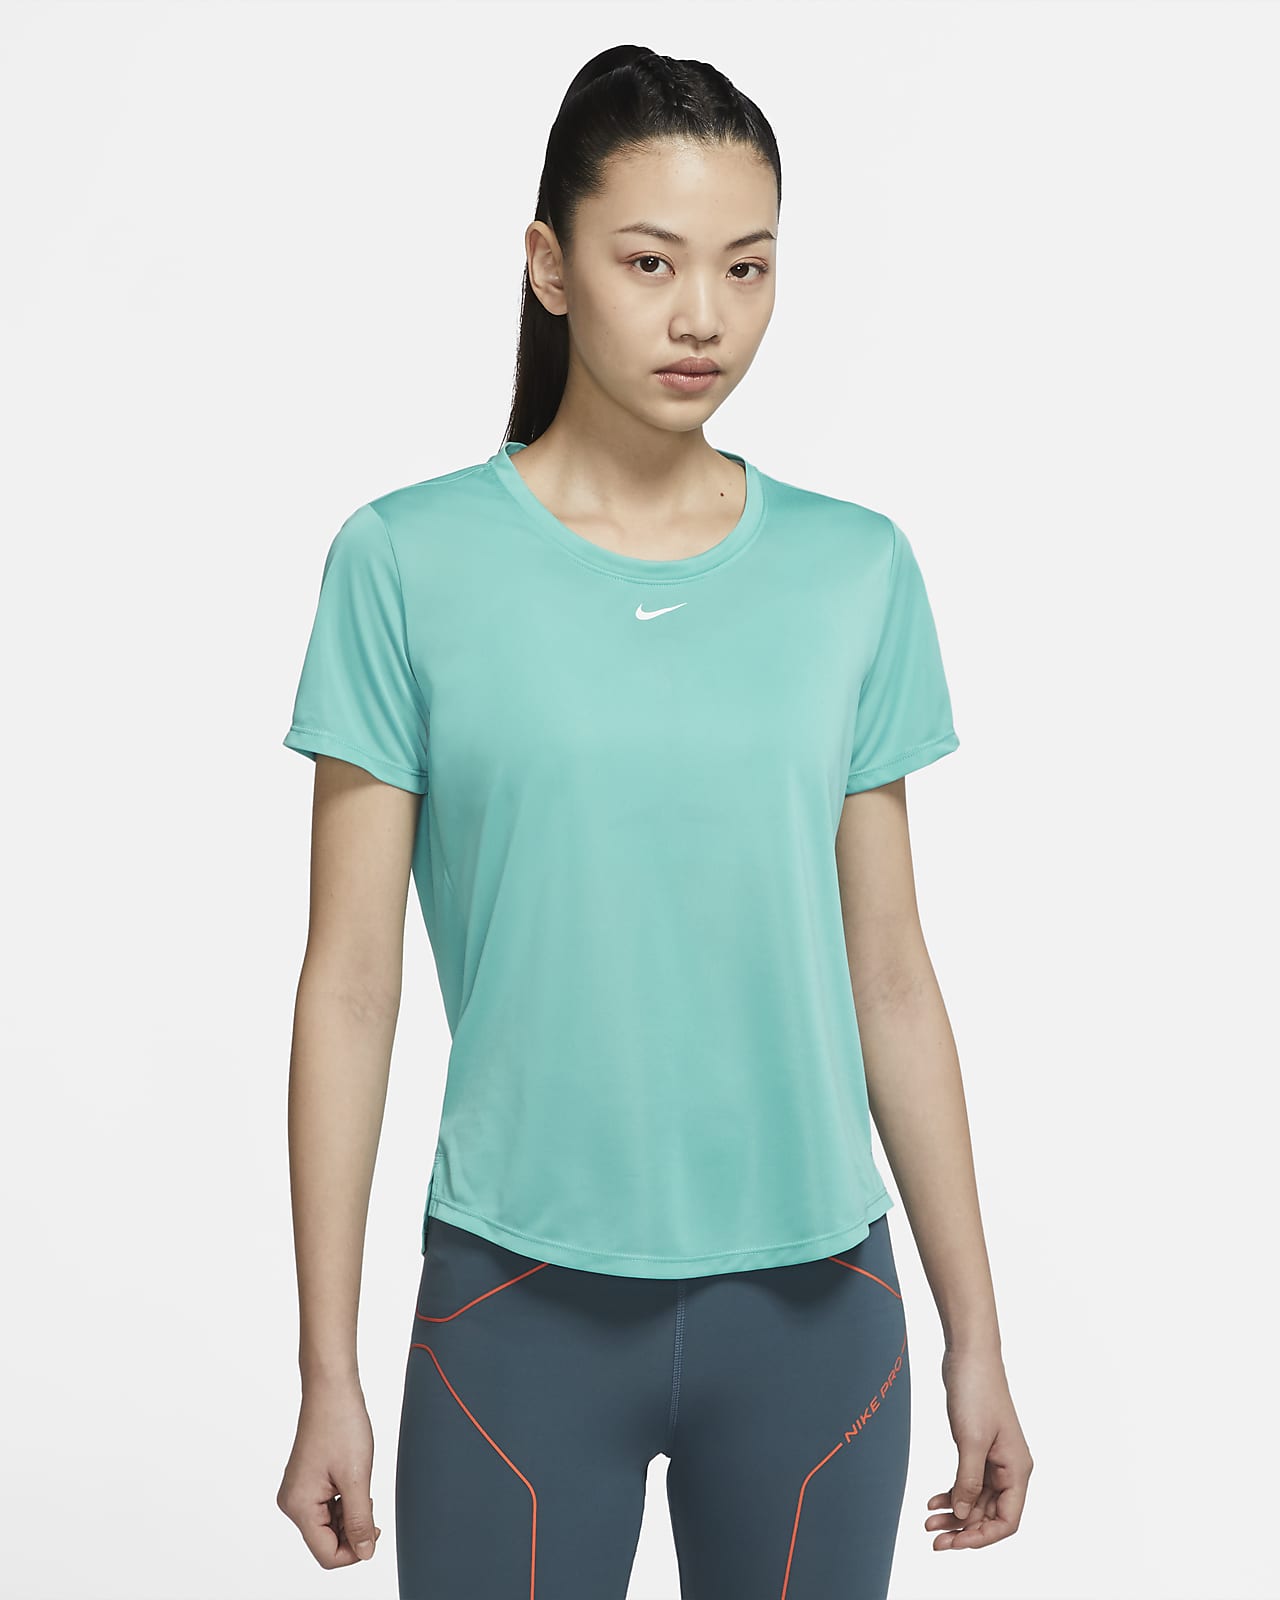 เสื้อยืดแขนสั้นทรงมาตรฐานผู้หญิง Nike Dri-FIT One